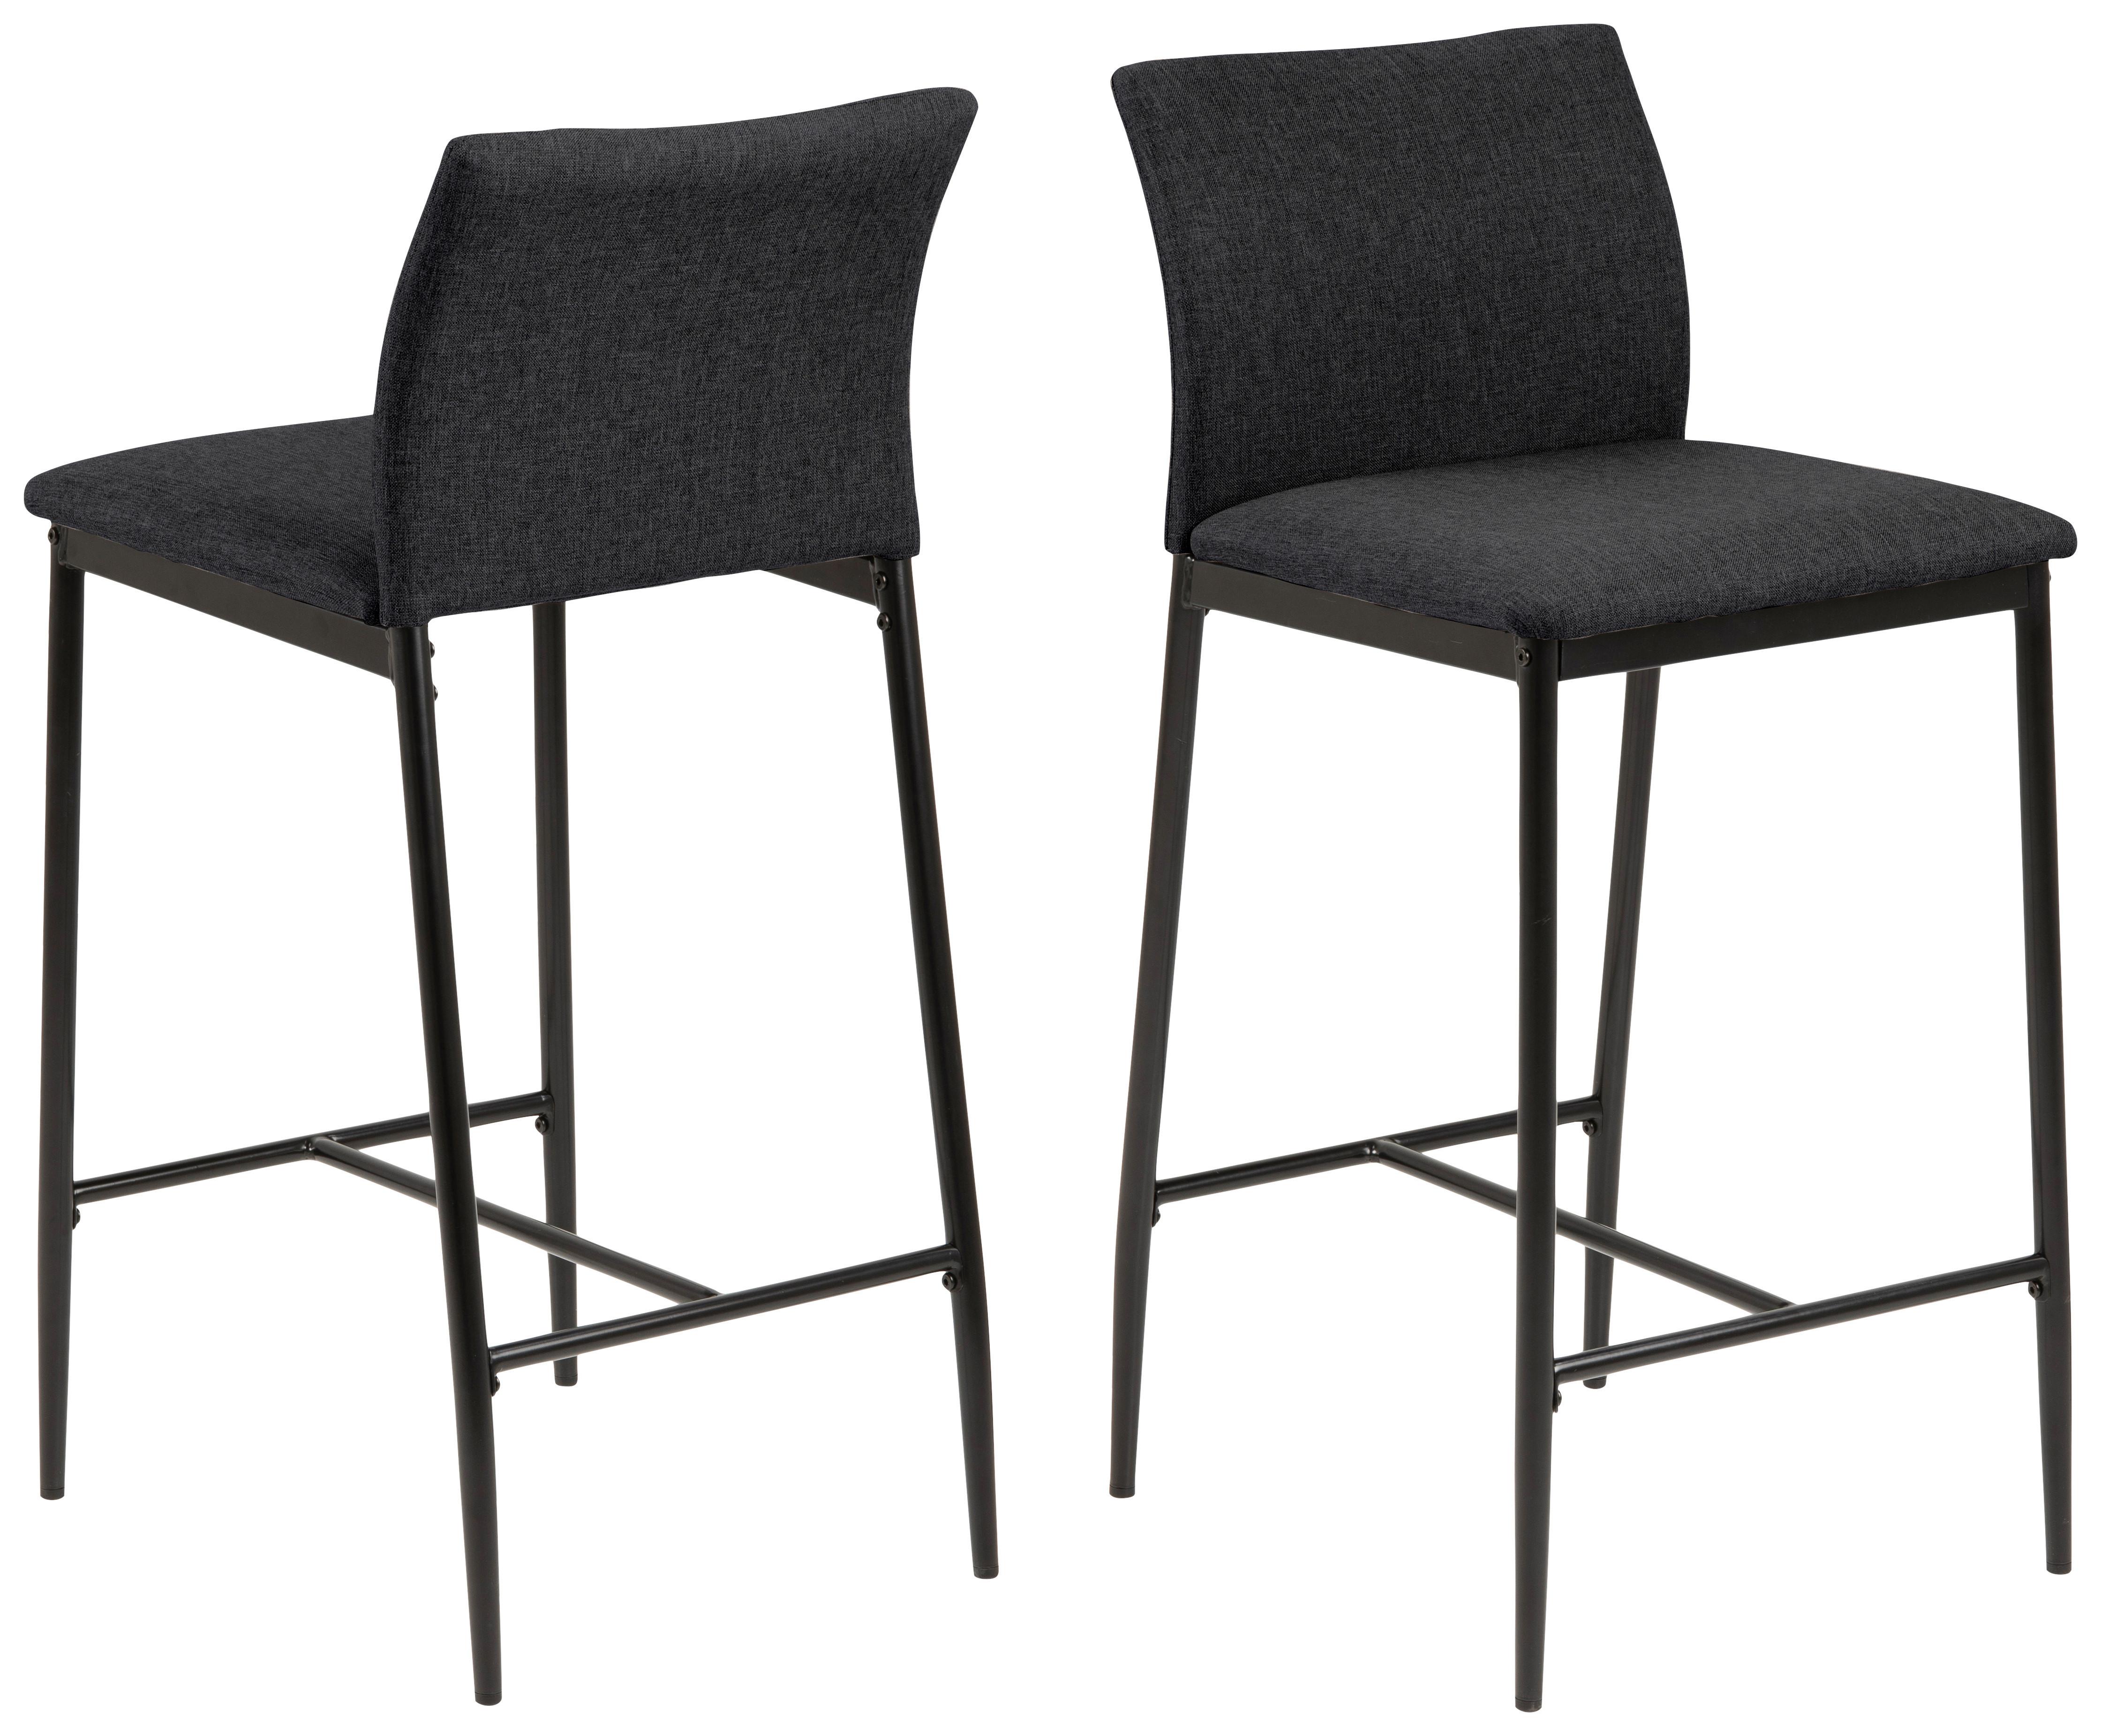 Barová Židle Demina - šedá/černá, kov/textil (40/88/46cm)